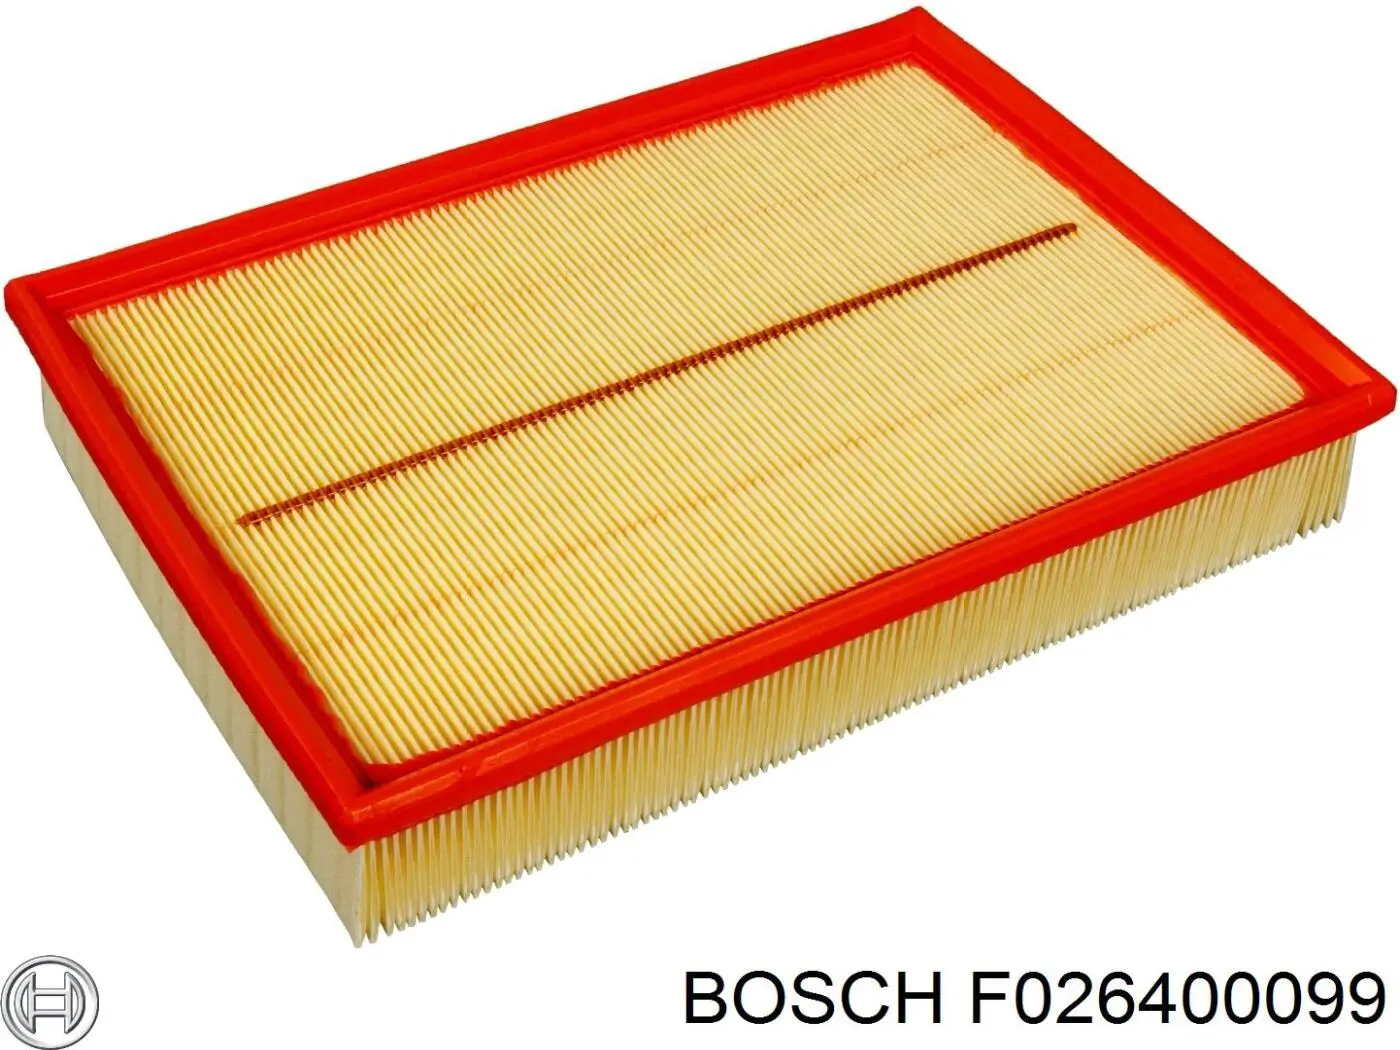 F026400099 Bosch filtro de aire